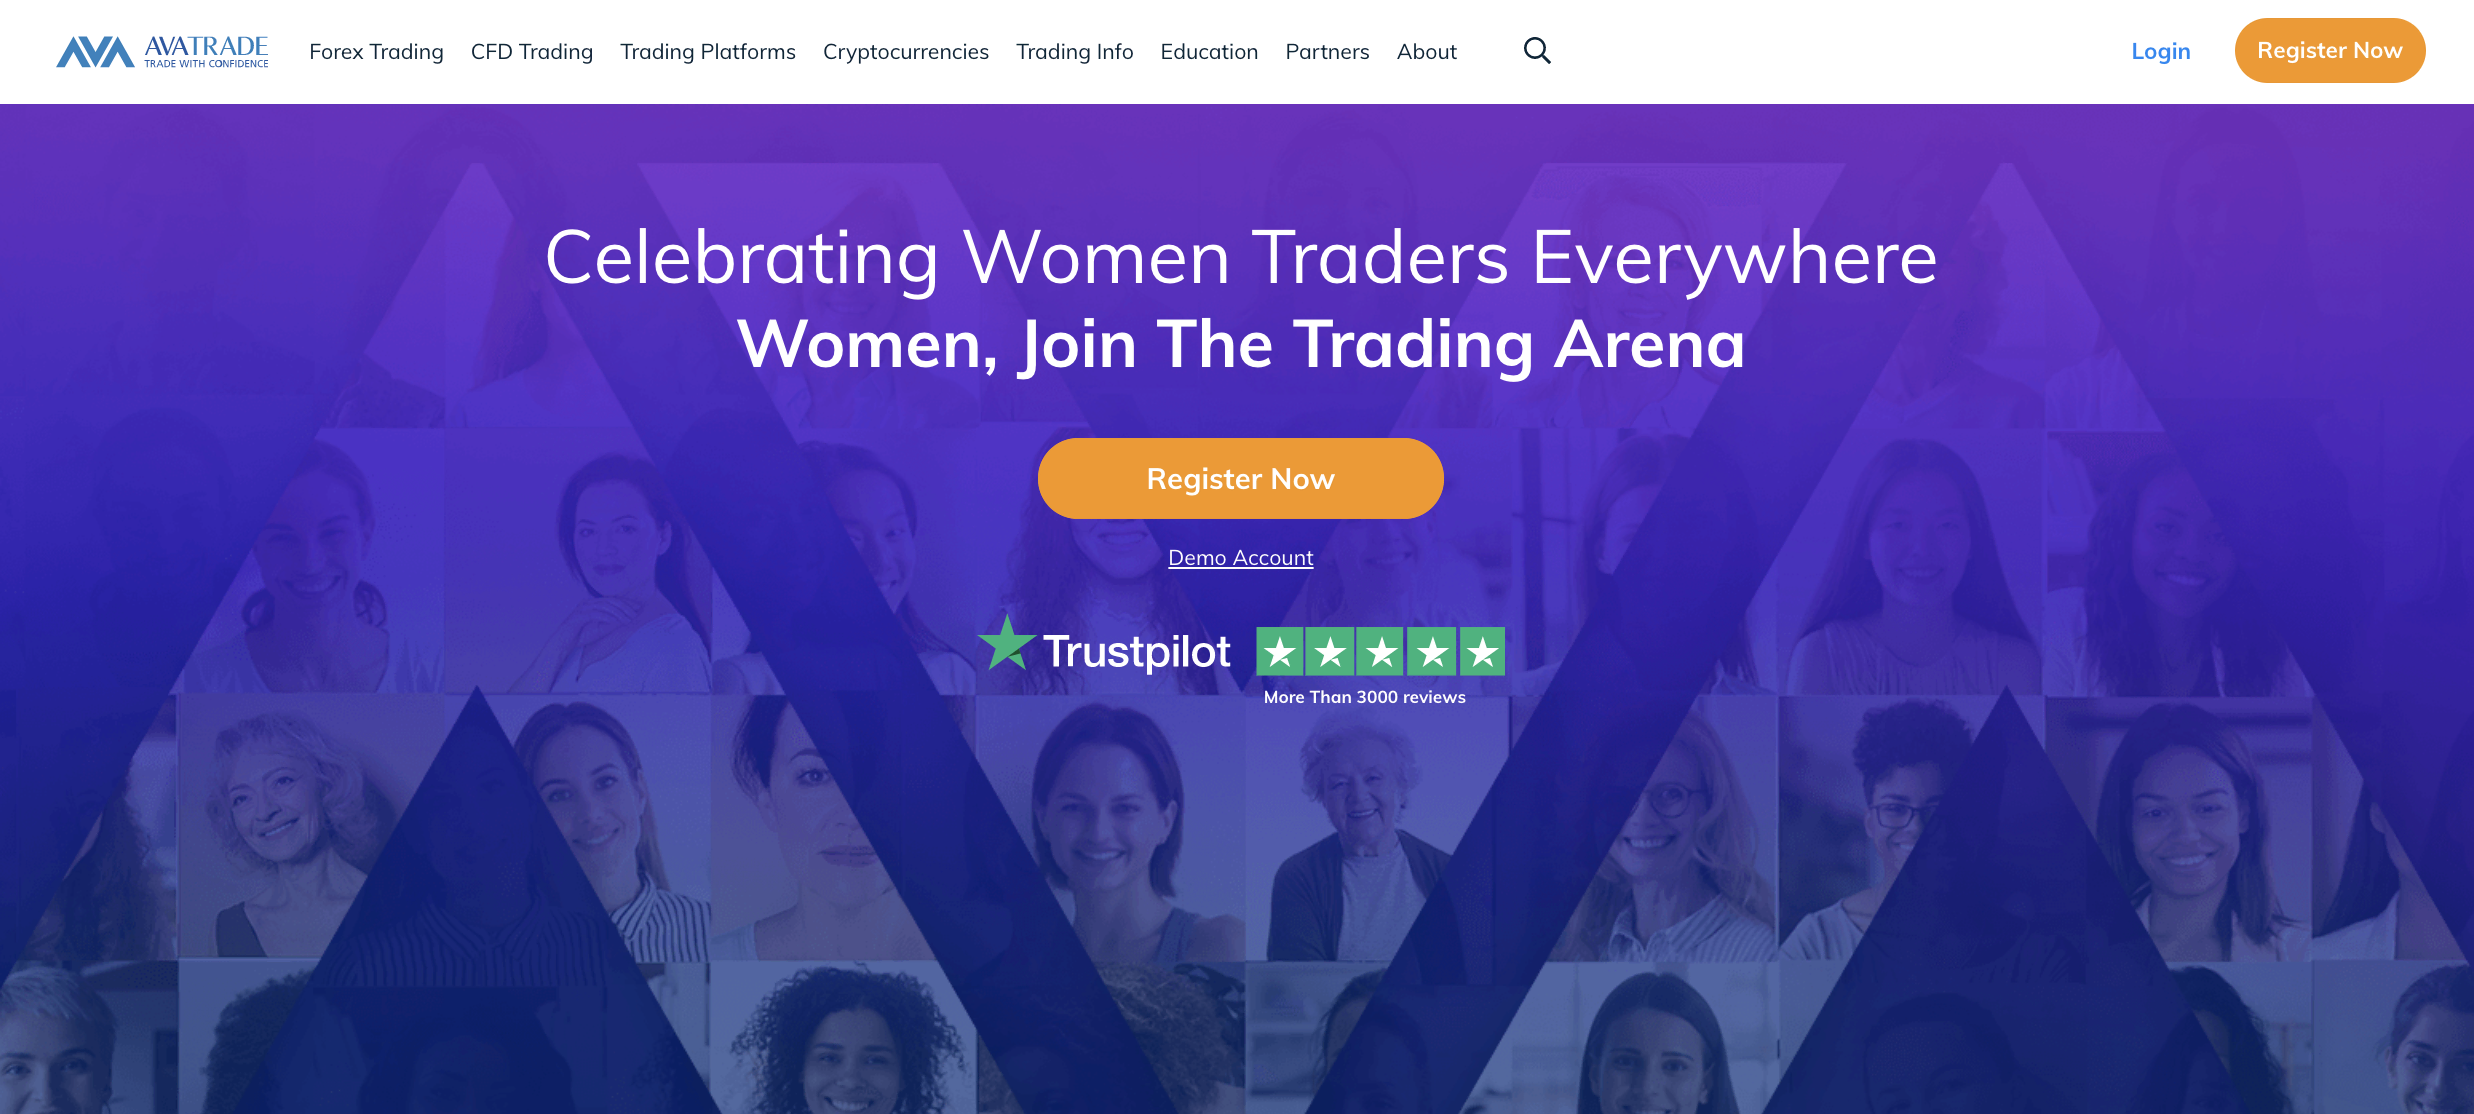 Η επίσημη ιστοσελίδα της AvaTrade. Υπάρχουν ειδικές προσφορές εδώ κατά καιρούς, όπως την Παγκόσμια Ημέρα της Γυναίκας ή άλλους εορτασμούς.